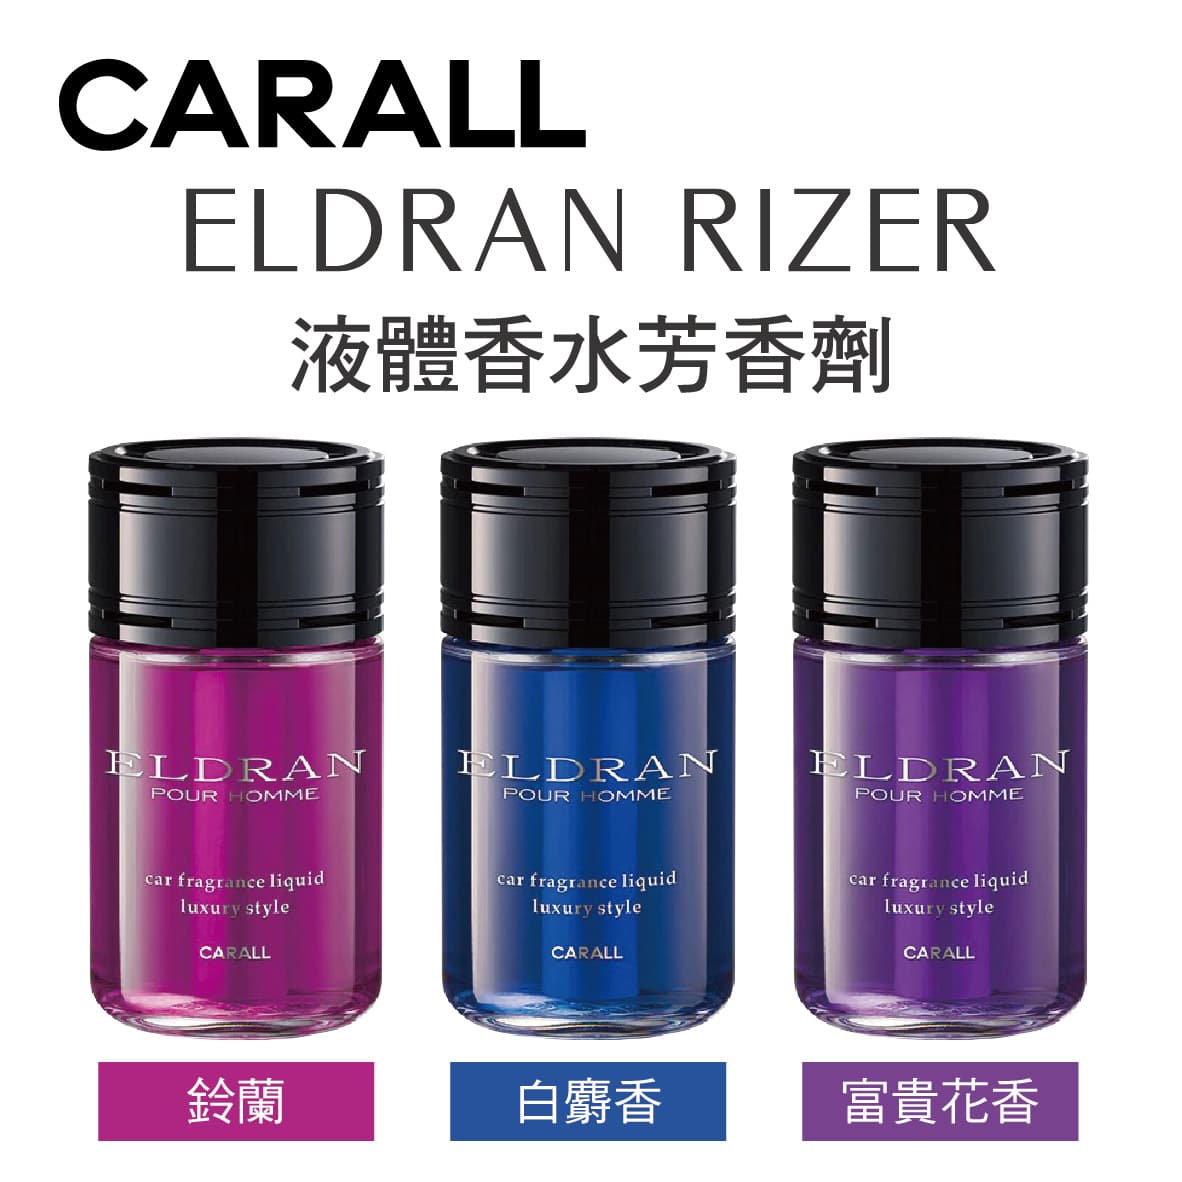 真便宜 CARALL ELDRAN RIZER POUR HOMME 大容量液體香水芳香劑200ml